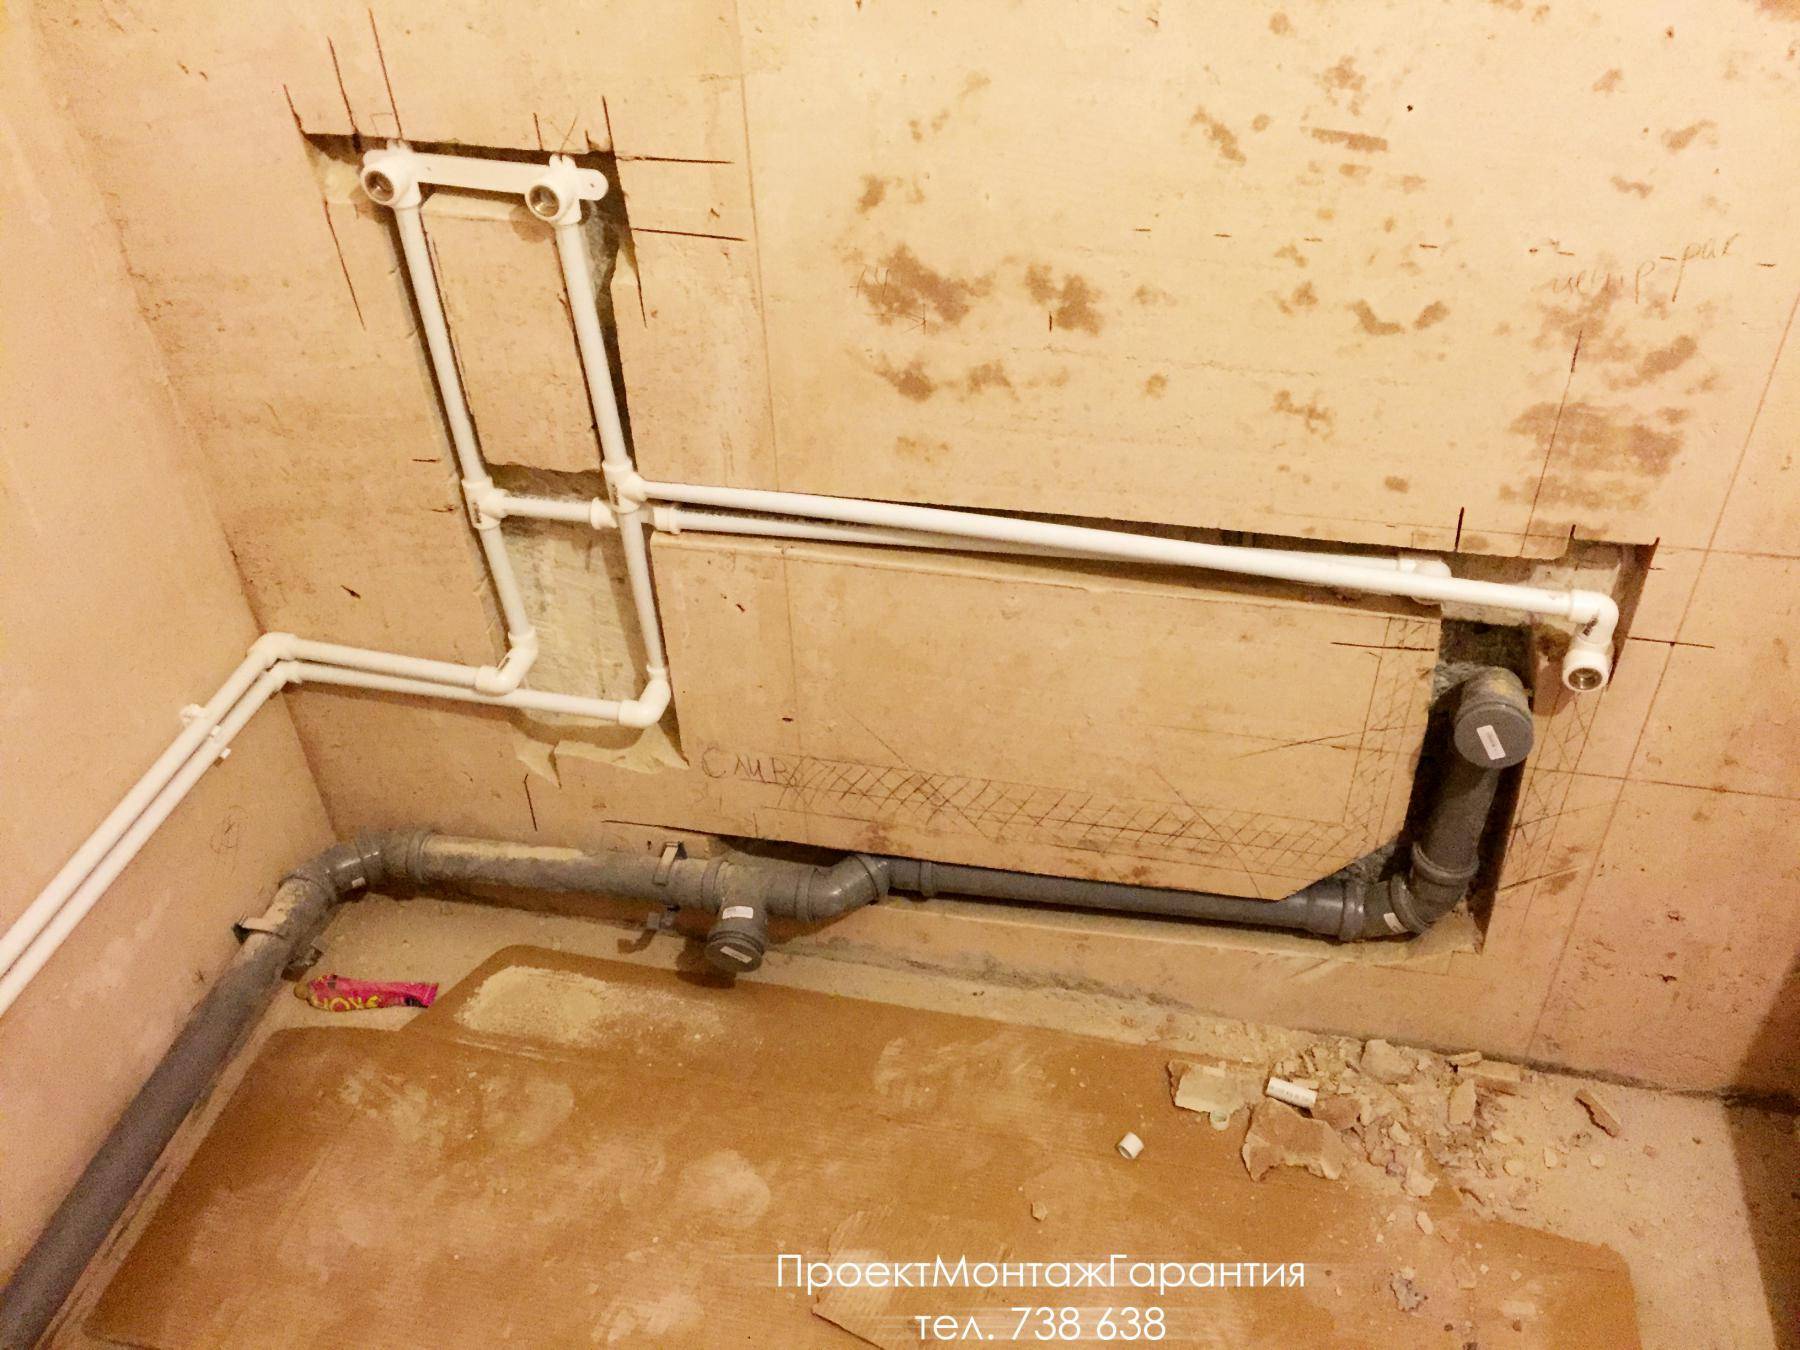 Замена водопроводных труб в квартире своими руками: их ремонт а так же как правильно соединить металлопластиковые трубы отопления